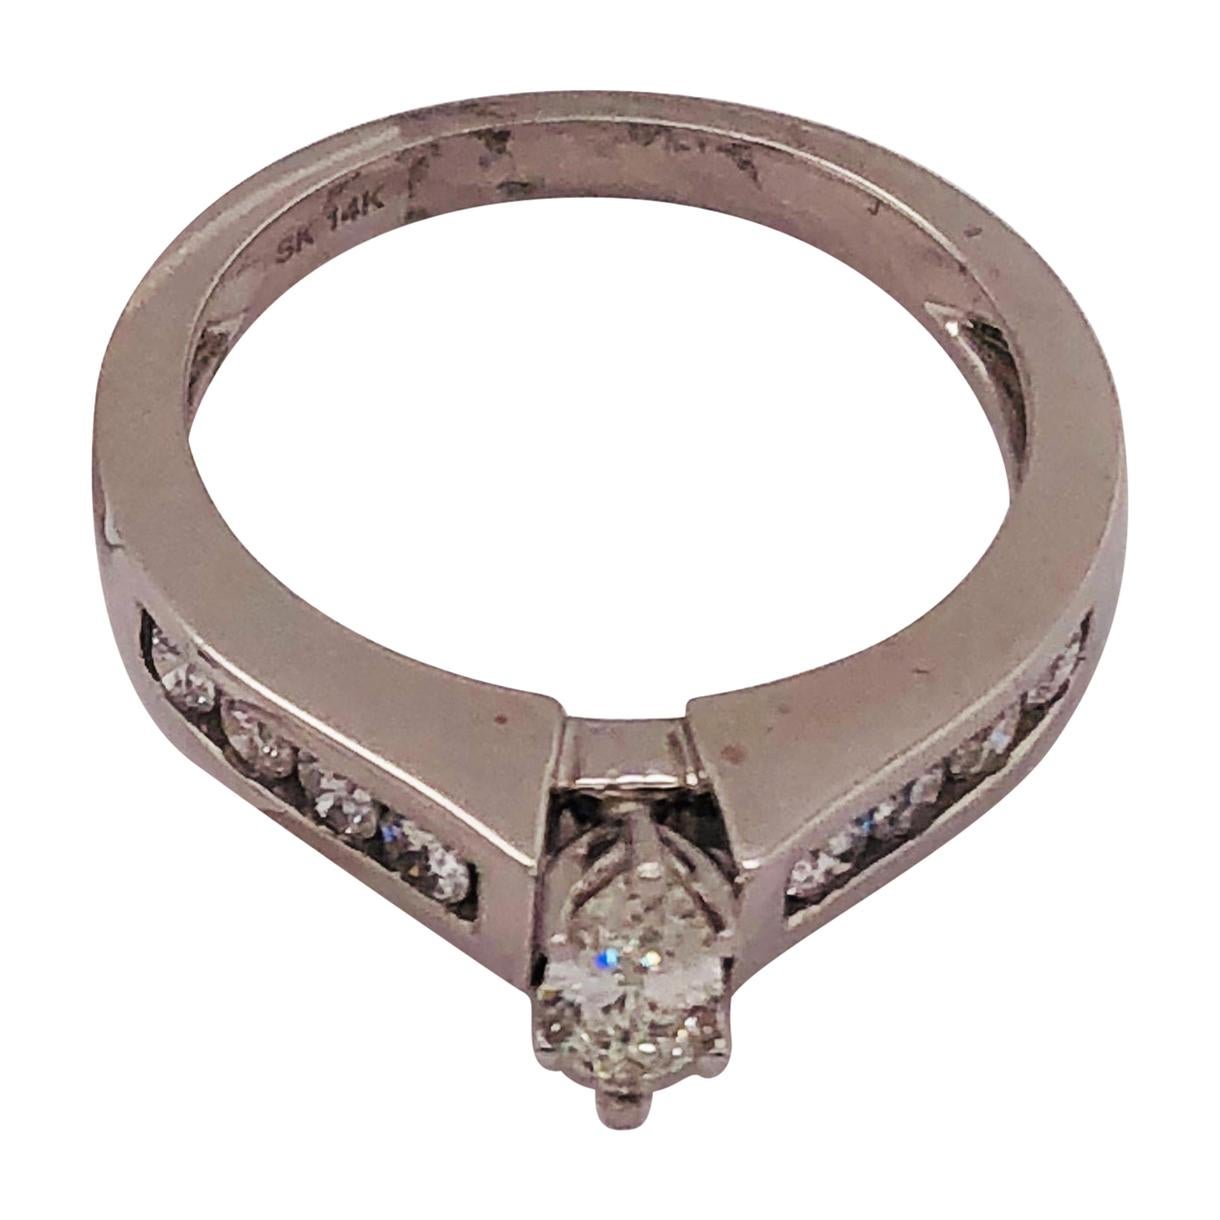 Bague de fiançailles de mariage en or blanc 14 carats avec diamants